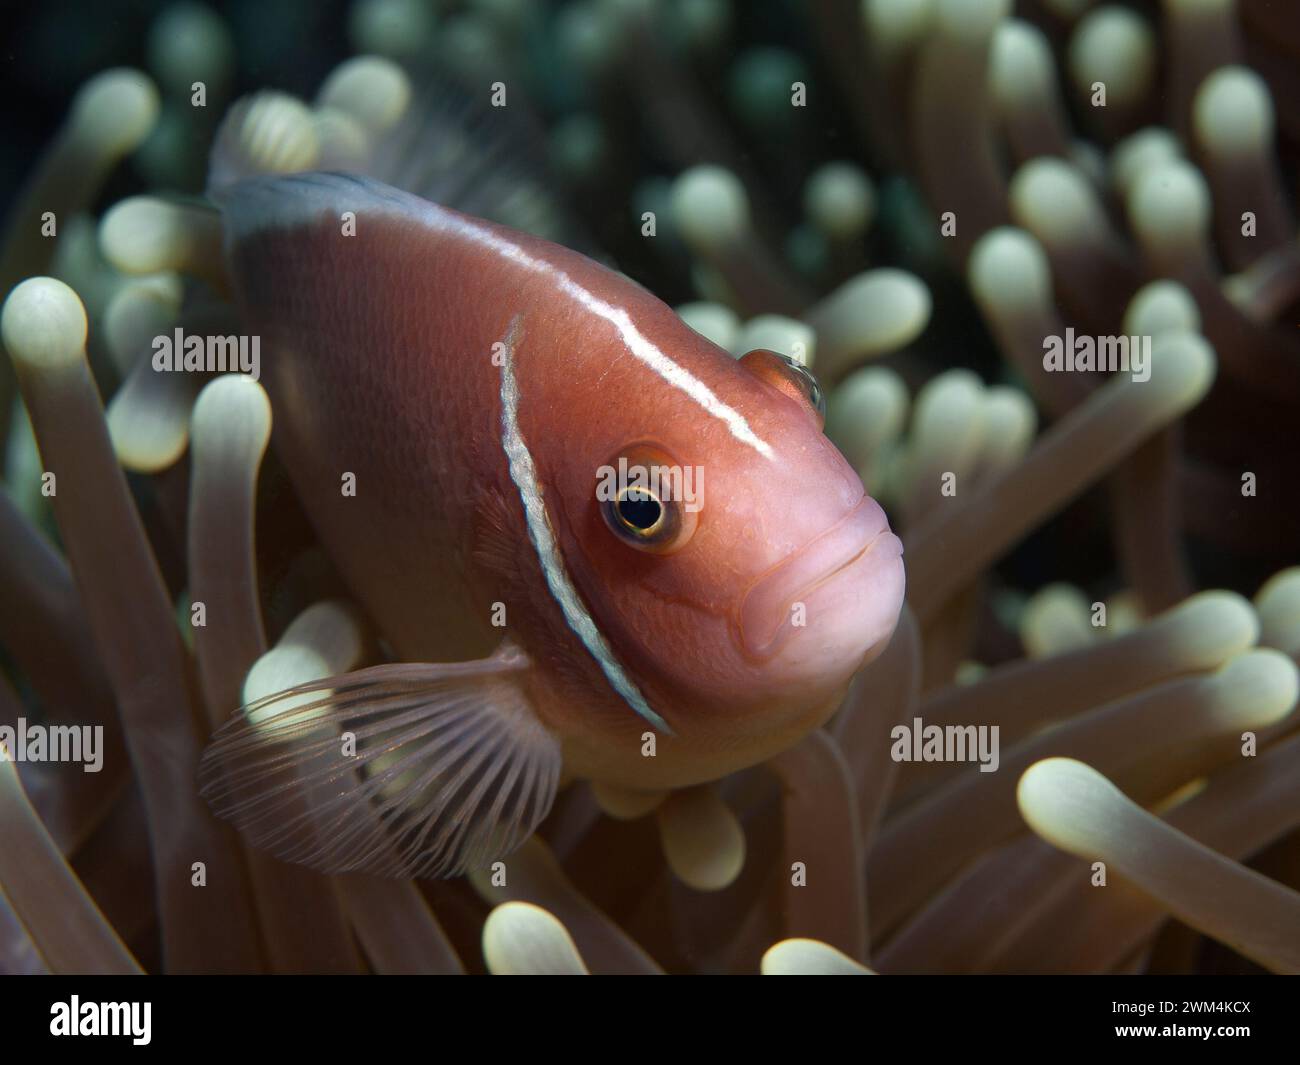 Anemonefish, siempre en movimiento: El pez payaso se ve curiosamente fuera de su anémona. Fotografía submarina: Arrecife de coral, Moalboal, Isla de Cebú, Filipinas Foto de stock